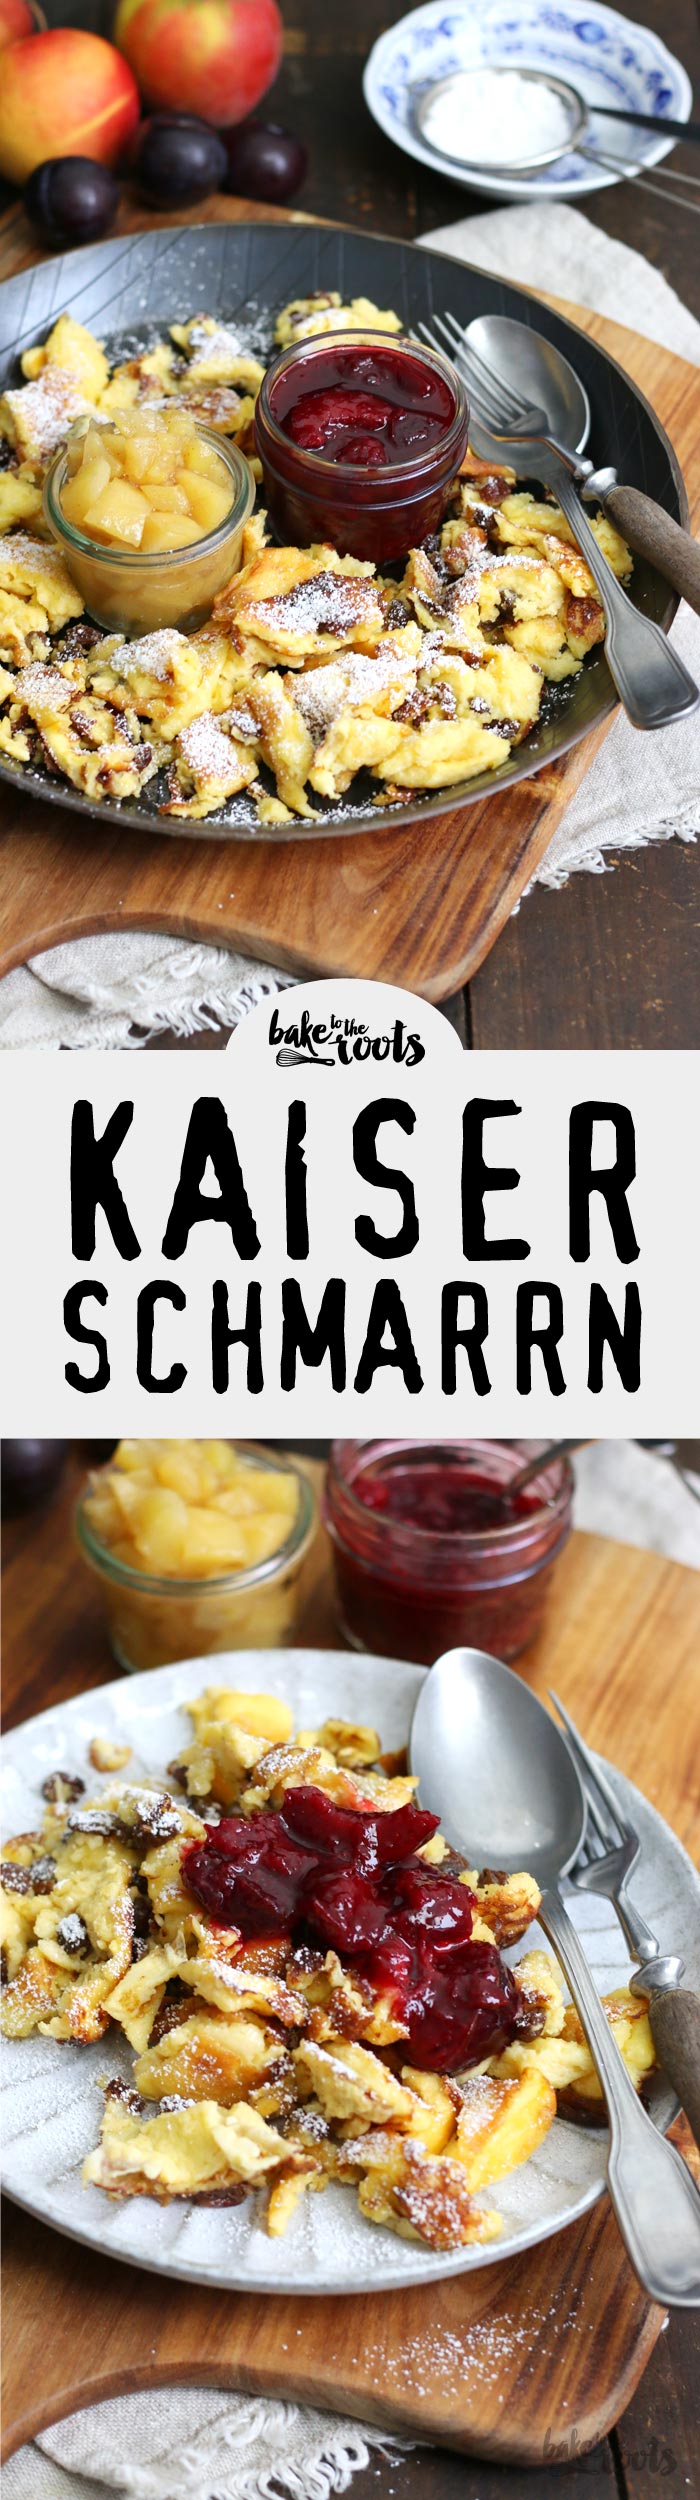 Leckerer Kaiserschmarrn mit Zwetschgenröster | Bake to the roots